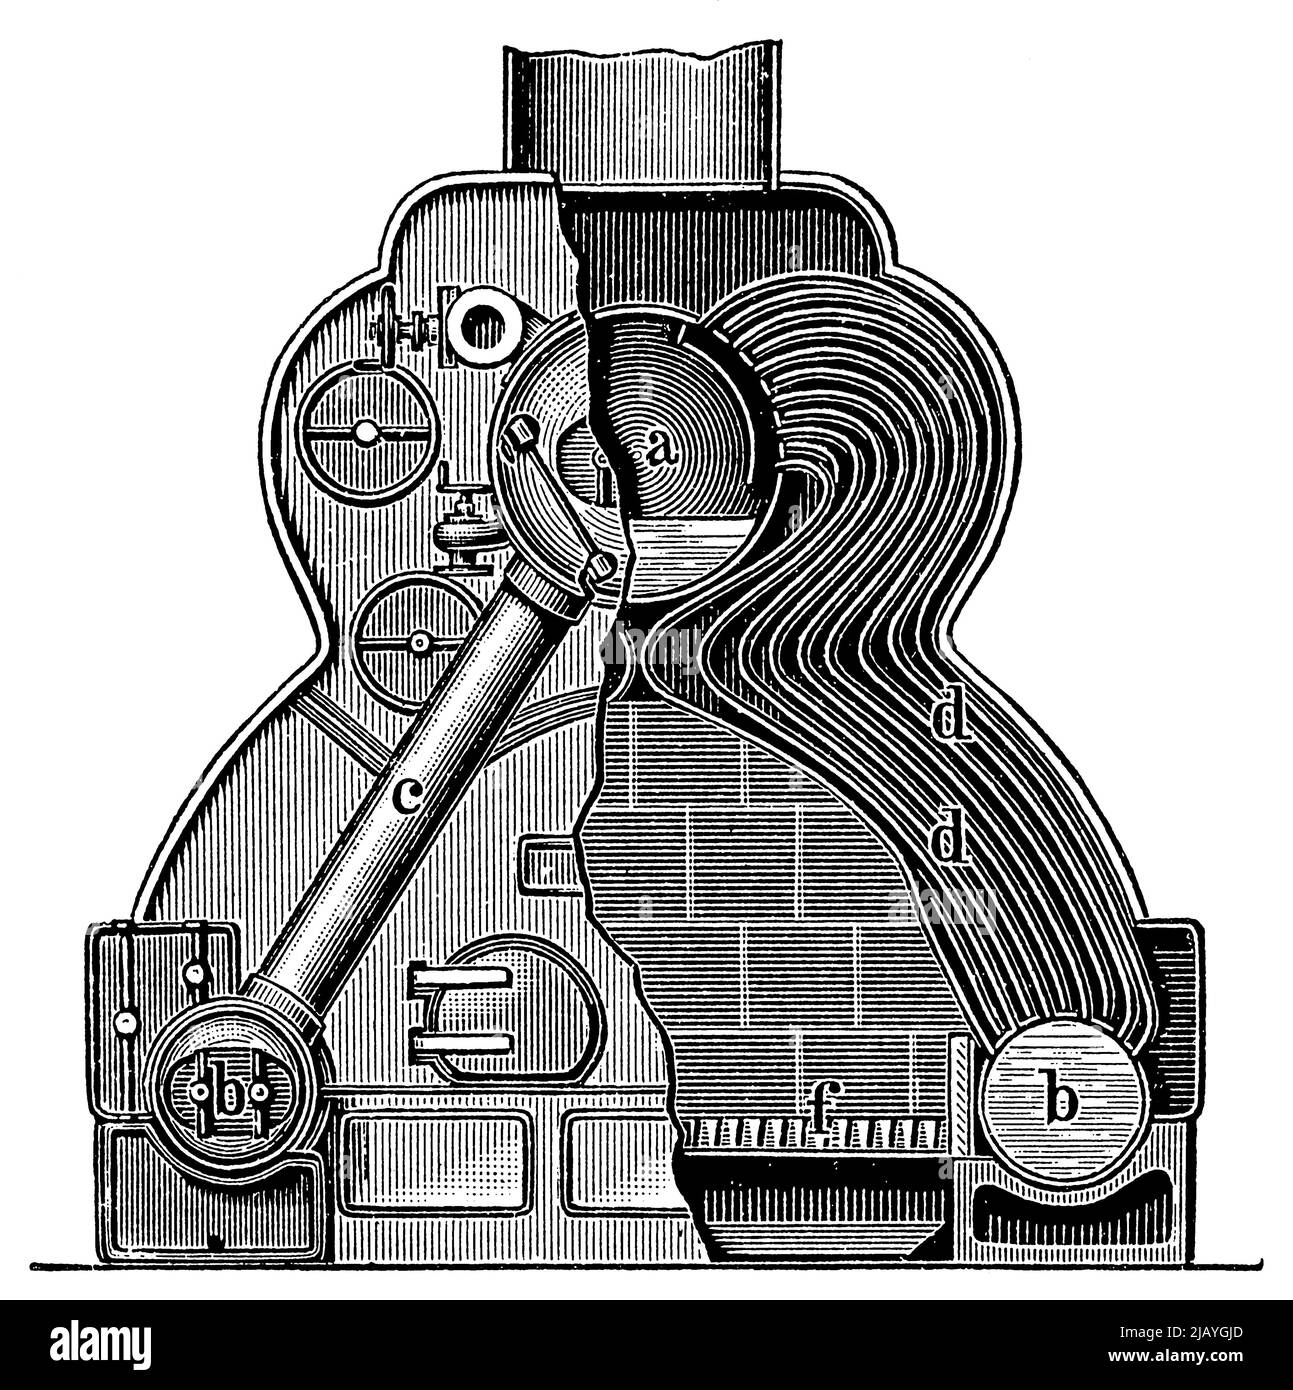 Chaudière à tube d'eau (chaudière Thornycroft), vue en coupe. Publication du livre 'Meyers Konversations-Lexikon', Volume 2, Leipzig, Allemagne, 1910 Banque D'Images